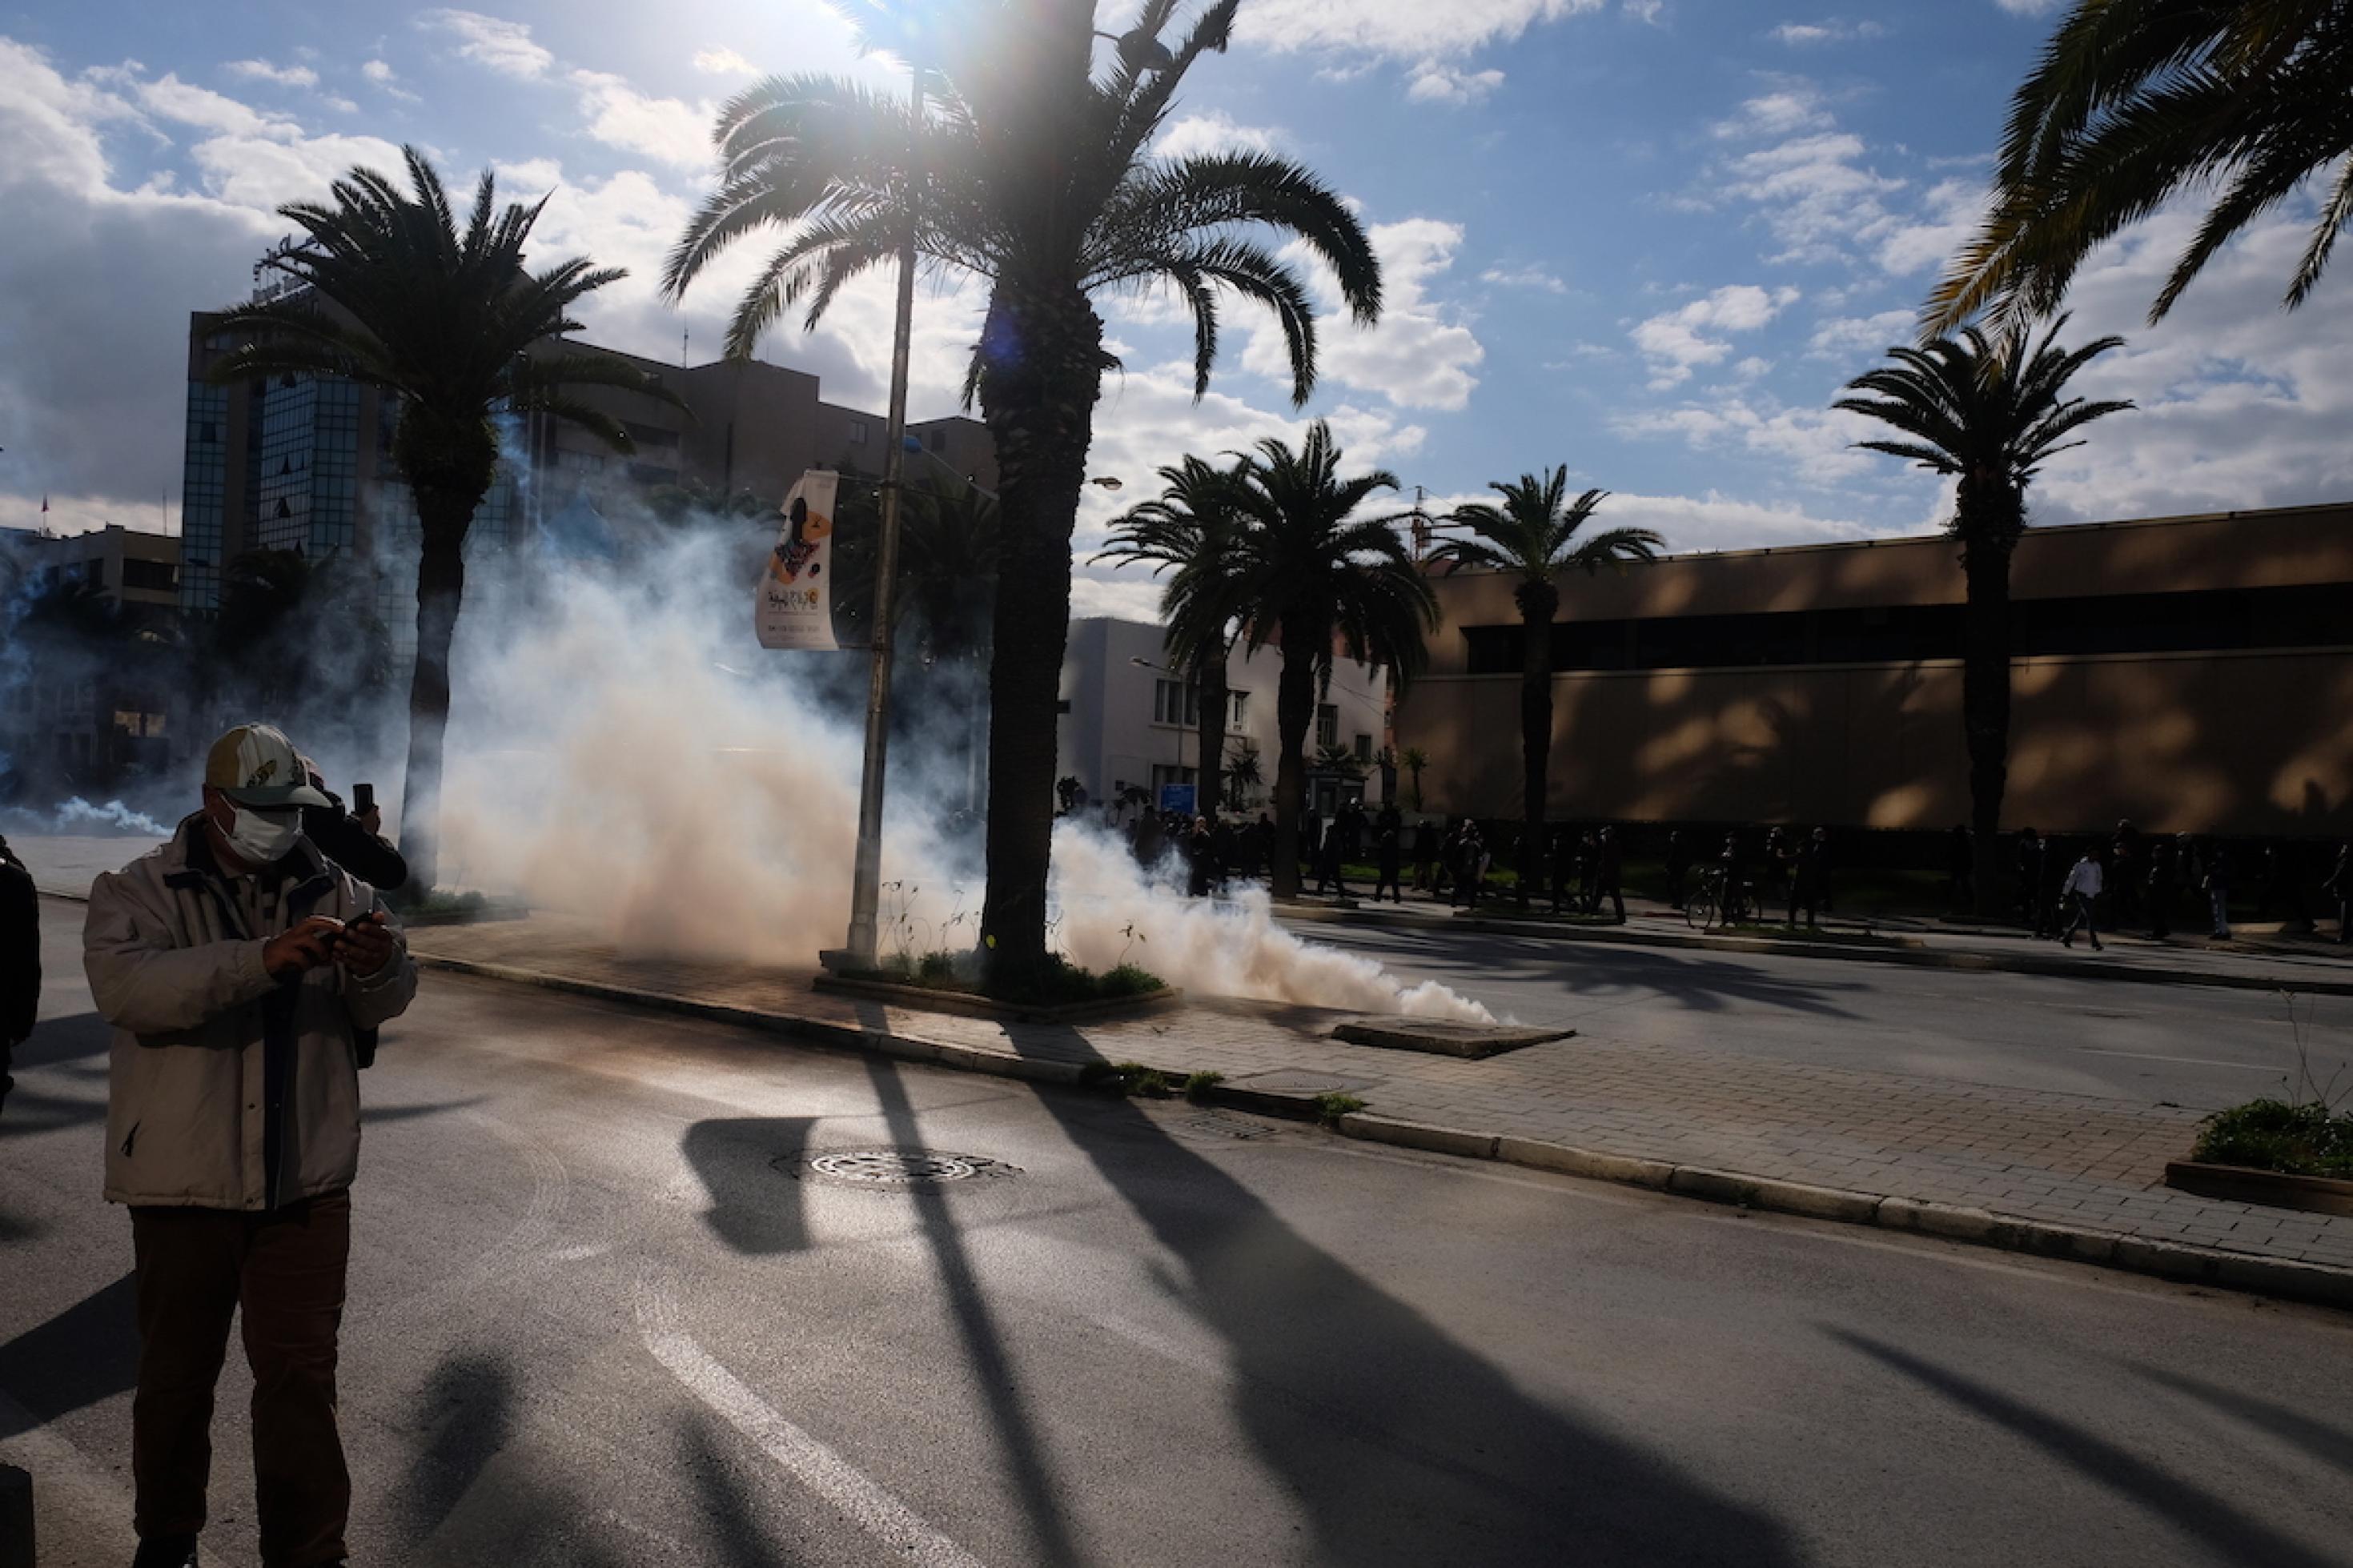 Eine Tränengaskartusche taucht einen Teil einer breiten, leeren Straße in Rauchschwaden. Rechts und links stehen einige Menschen